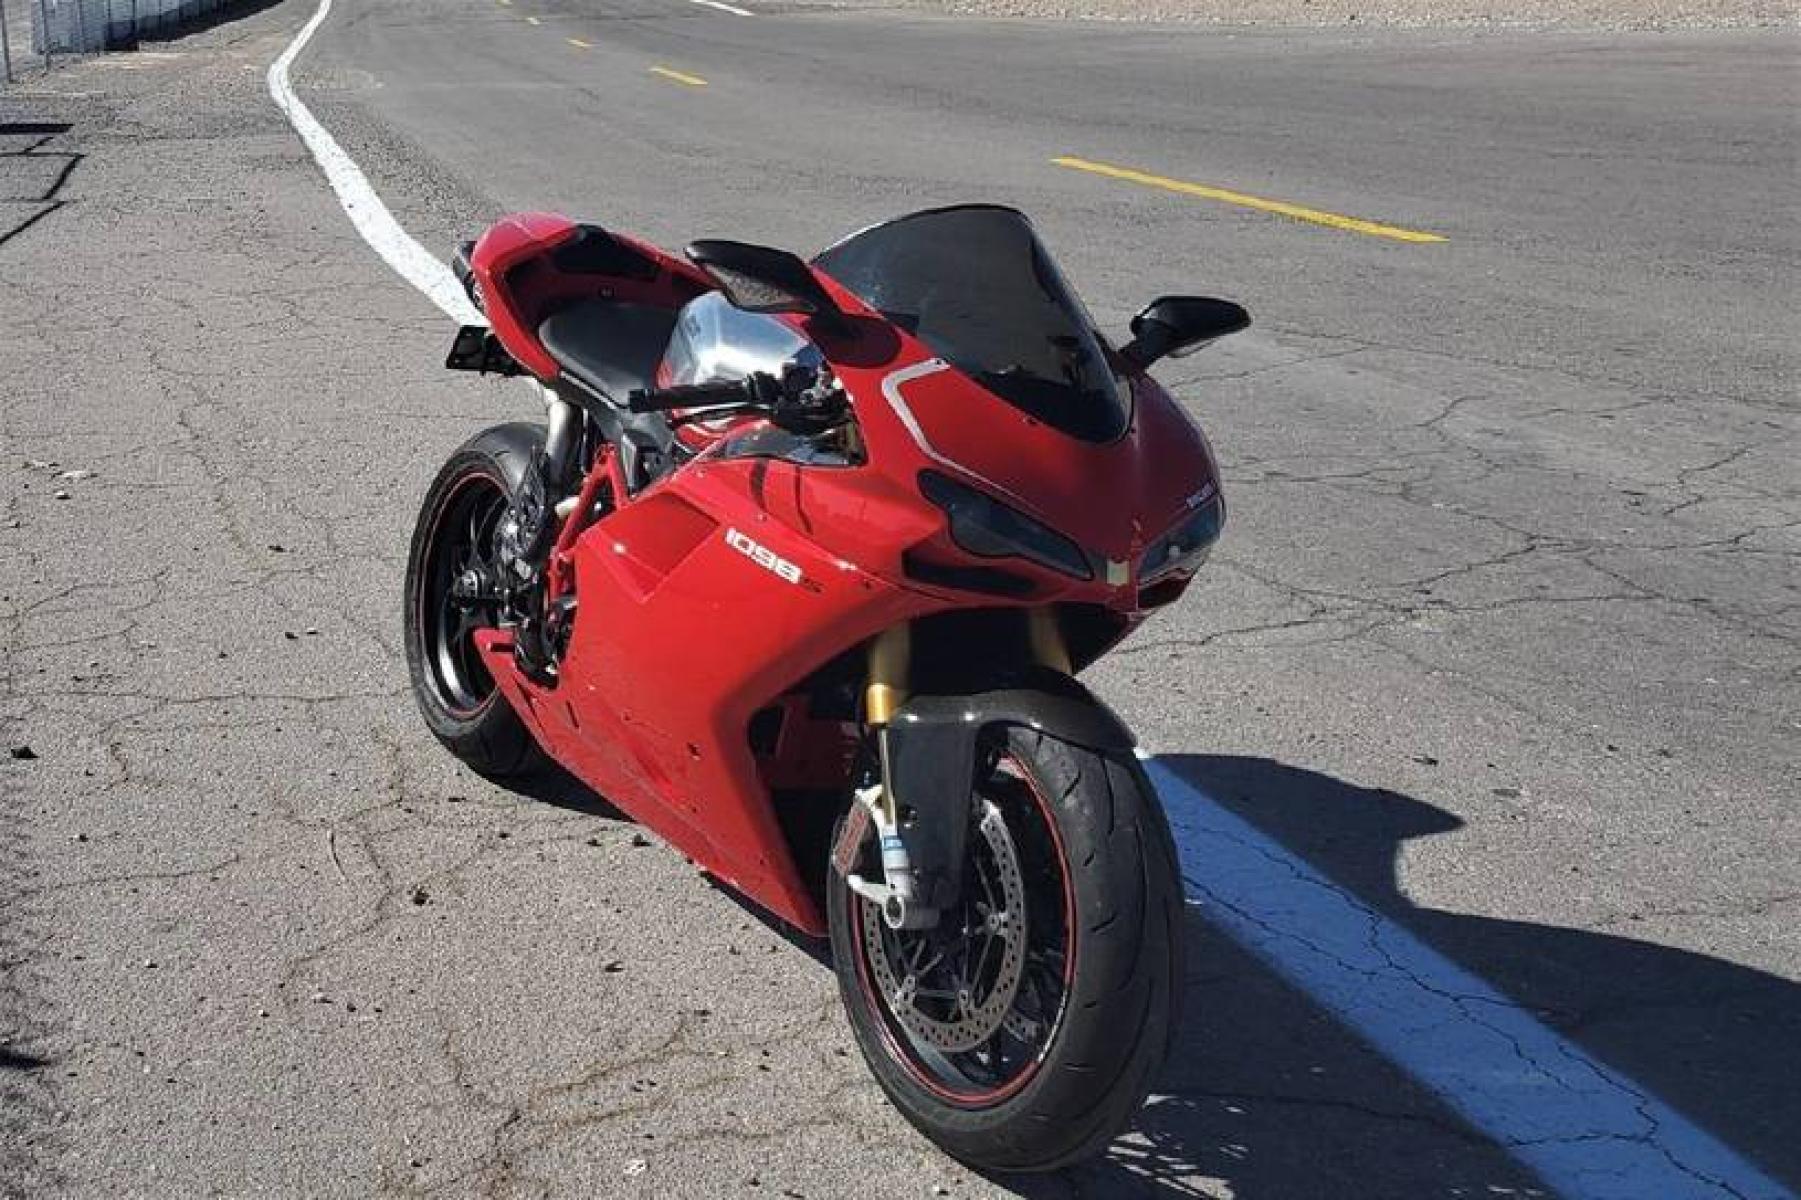 2008 Ducati 1099 S S (ZDM1XBEW18B) with an 1,098 cc L twin engine, Six-Speed Dry Clutch transmission, located at 3160 South Valley View Blvd, Las Vegas, NV, 89146, (888) 750-6845, 36.132458, -115.190247 - b64:VGhlIER1Y2F0aSAxMDk4UyBib2FzdHMgc29tZSBnb3JnZW91cyBib2R5d29yayBhbmQgc2xpY2sgZGVzaWduIGN1ZXMsIGJ1dCBpdHMgcmVhbCBtYXN0ZXJwaWVjZSBsaWVzIGJlbmVhdGggdGhvc2UgcHJldHR5IHBsYXN0aWMgcGFuZWxzLiBVbmRlcm5lYXRoIGlzIGEgdHVidWxhciBzdGVlbCB0cmVsbGlzIGZyYW1lIG9wdGltaXplZCBmb3Igc3RpZmZuZXNzLCBhbmQgYW4gTC10d2luIGVu - Photo #4